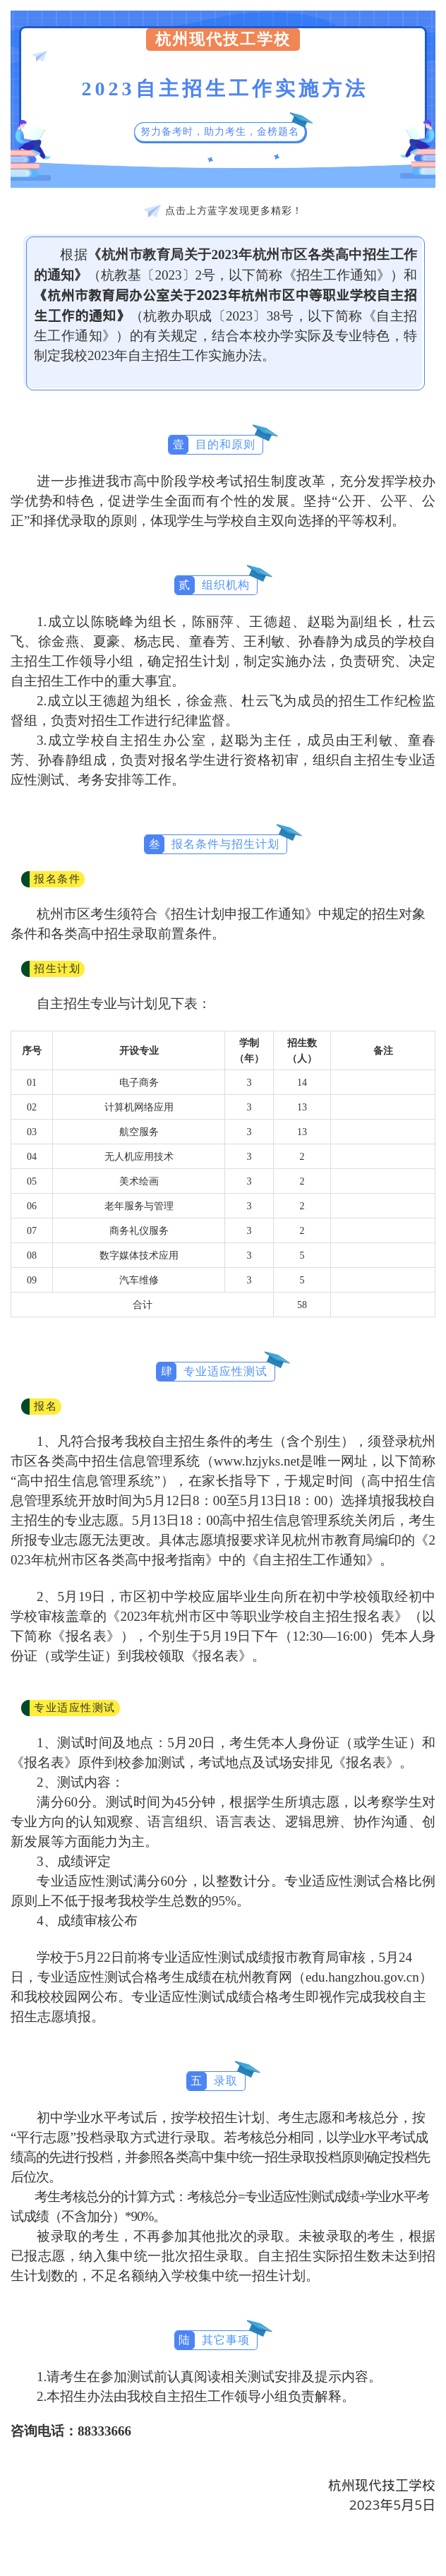 杭州现代技工学校2023自主招生工作实施方法